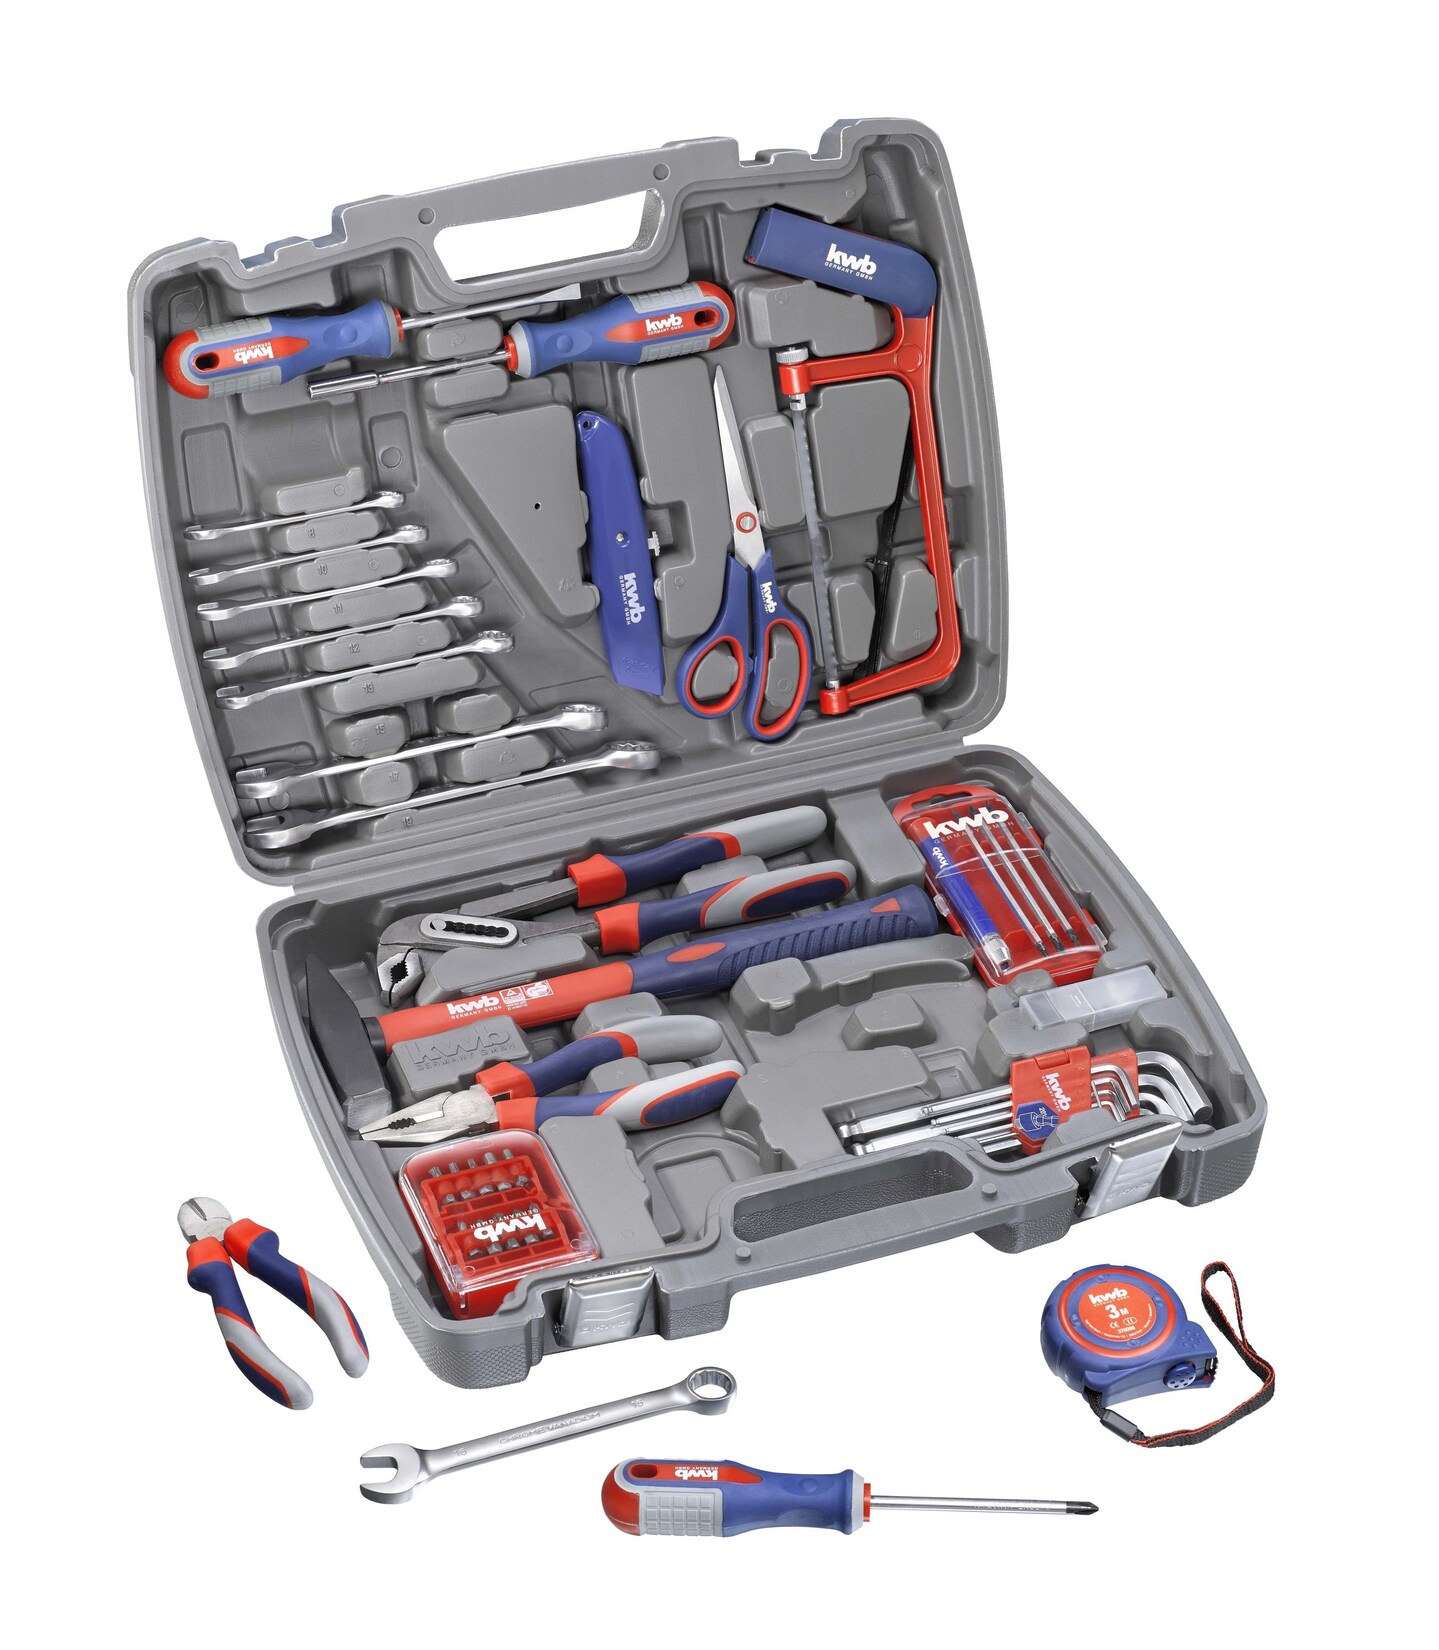 kwb Werkzeug-Koffer inkl. Werkzeug-Set, 65-teilig, gefüllt, robust und hochwertig, ideal für,den Haushalt oder oder die 